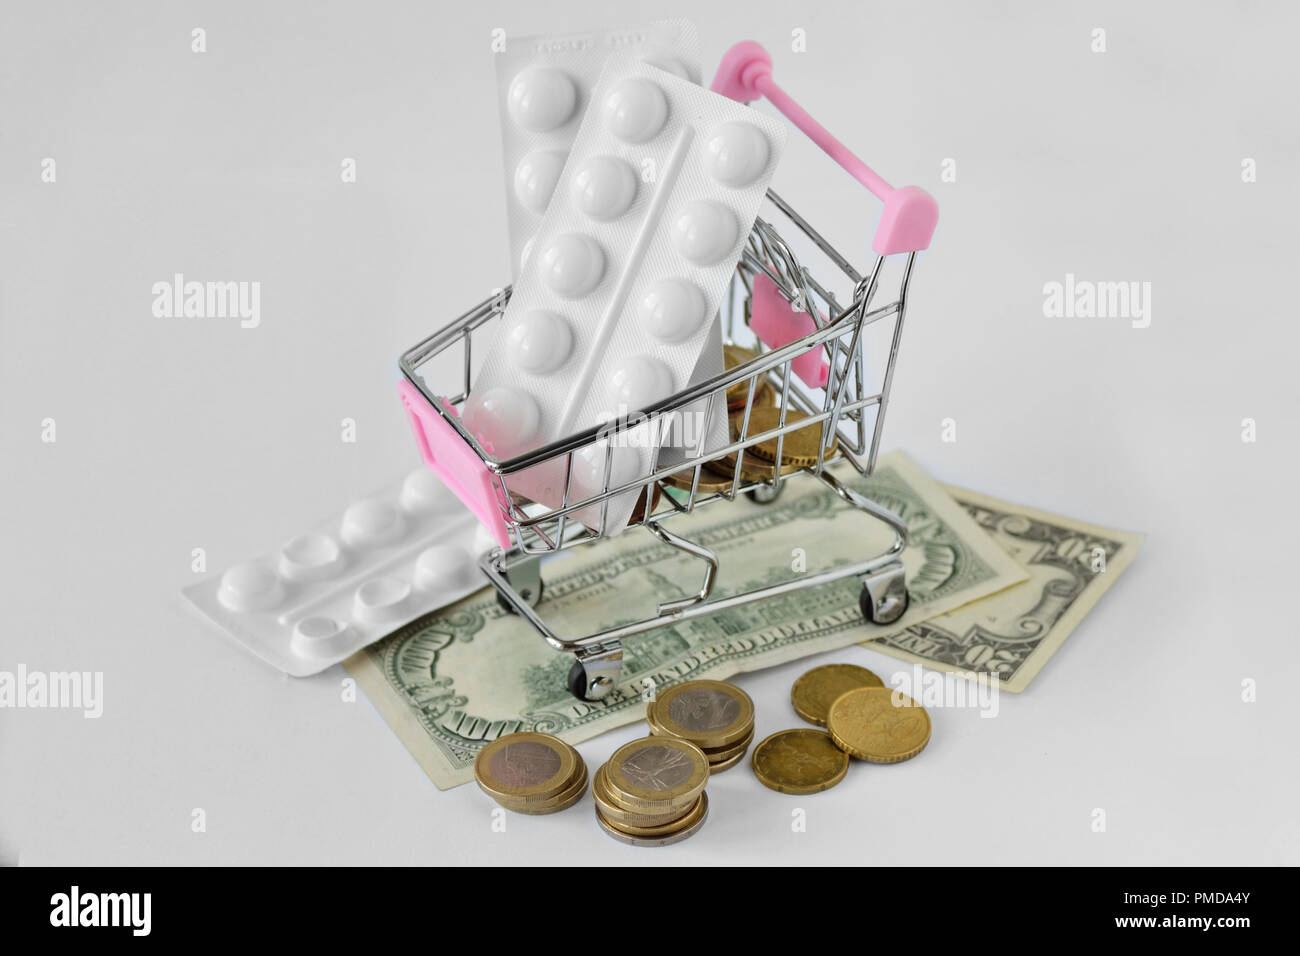 Pink carrello con pillole medicinali sul denaro - Pharmaceutical cost concept Foto Stock